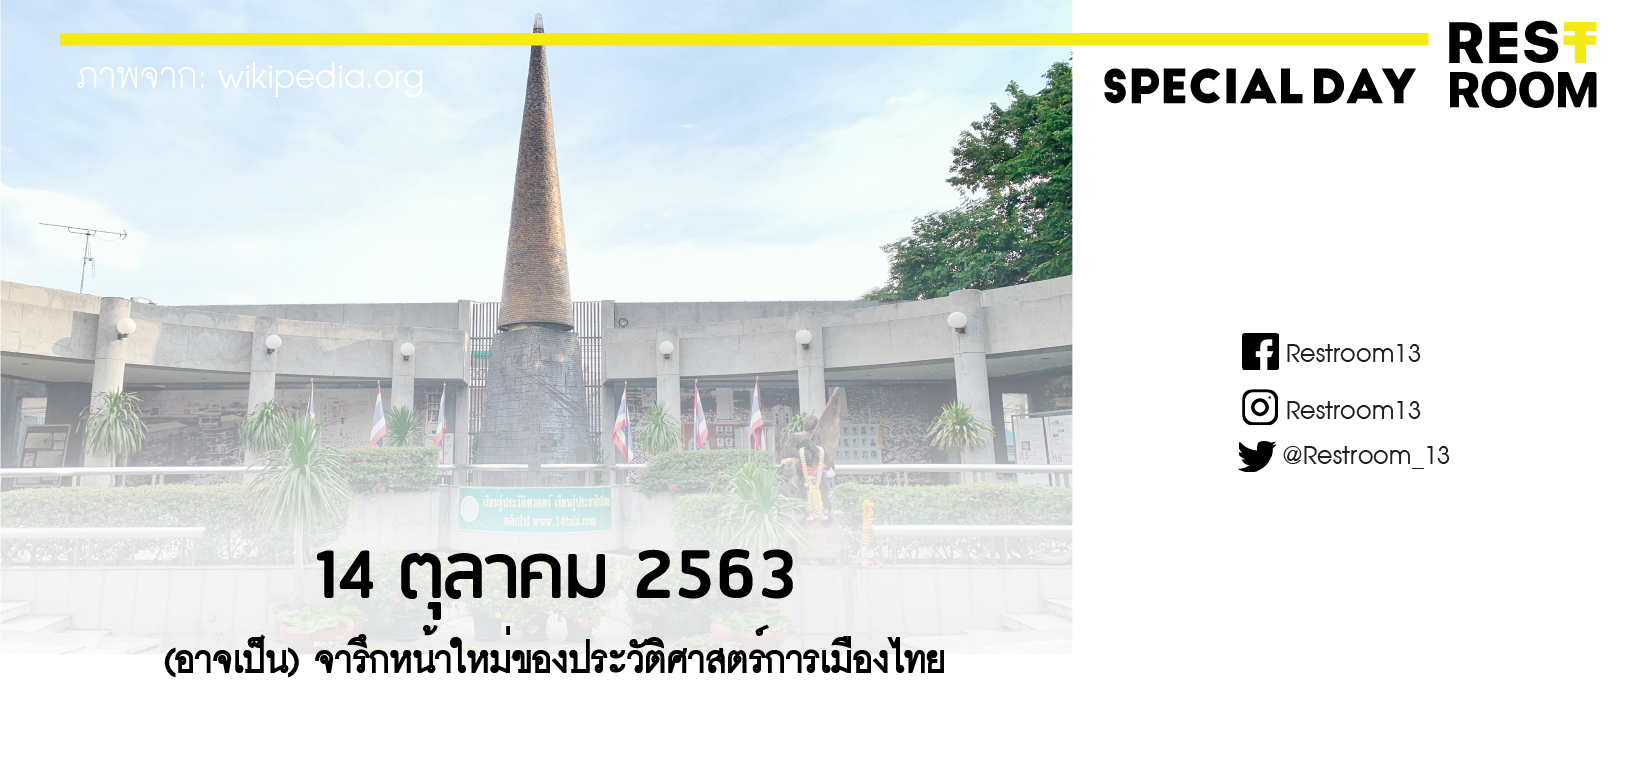 14 ตุลาคม 2563 (อาจเป็น) จารึกหน้าใหม่ของประวัติศาสตร์การเมืองไทย